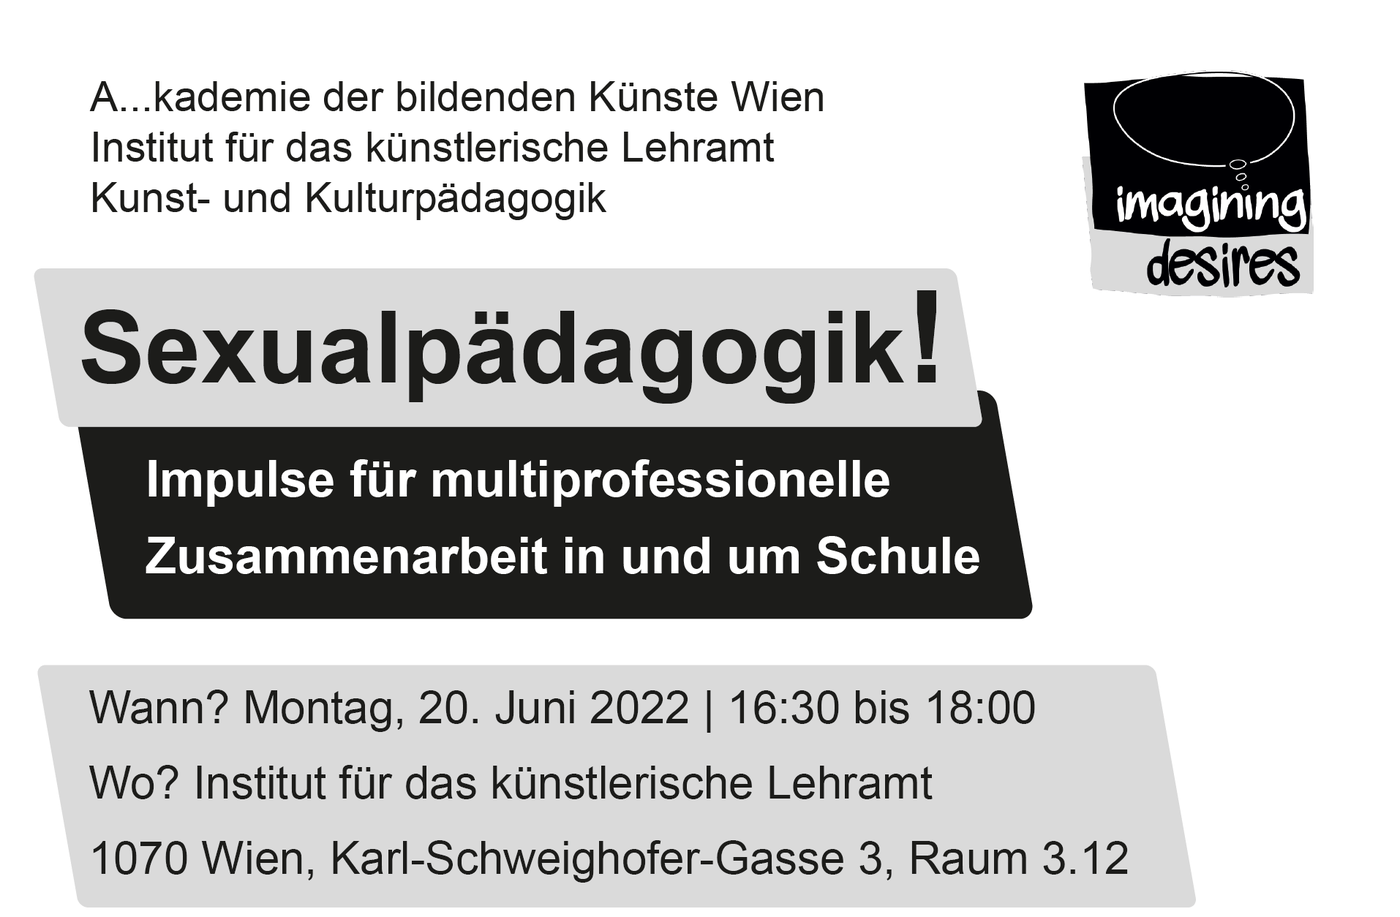 Plakat der Veranstaltung "Sexualpädagogik" mit grau-schwarzer Schrift auf weißem Hintergrund